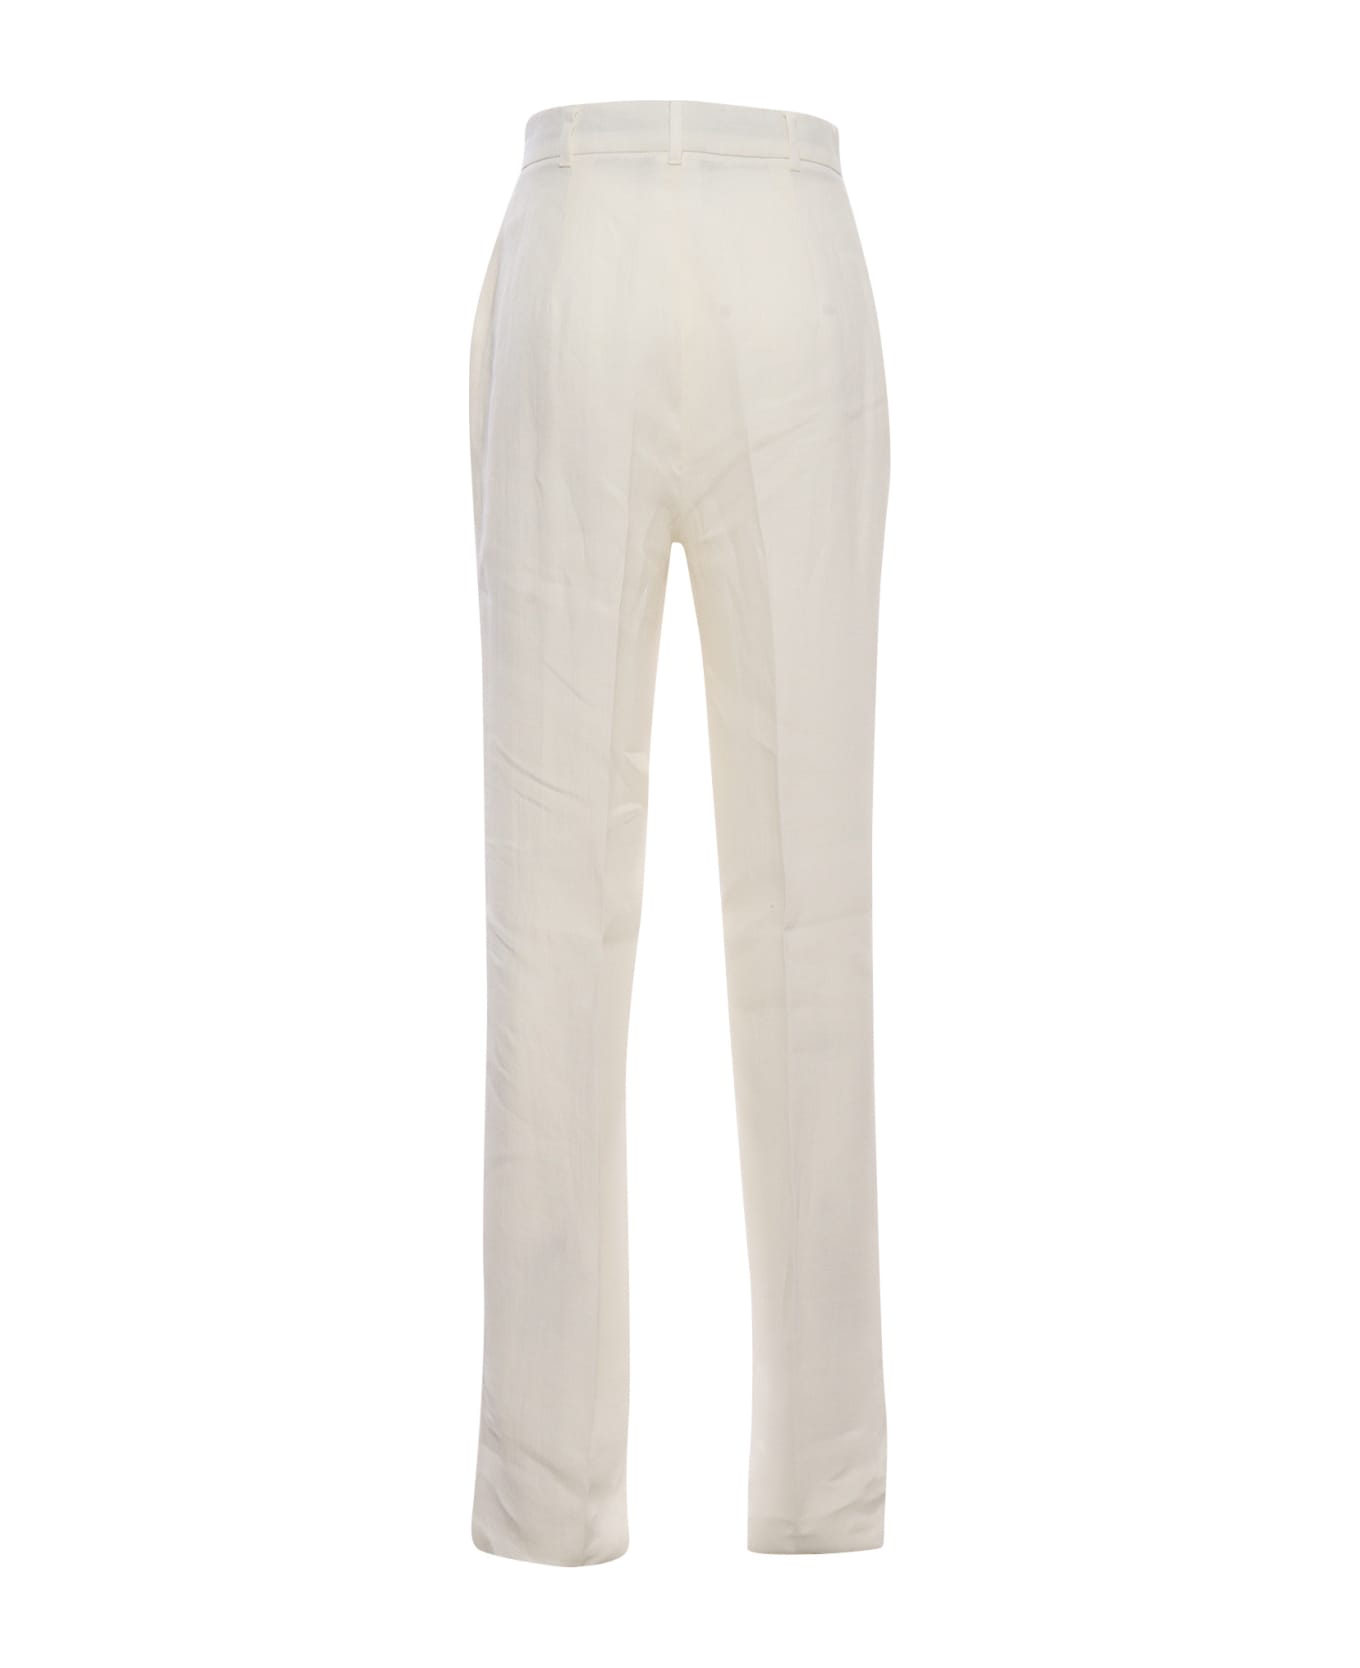 Max Mara Studio Alcano White Trousers - WHITE ボトムス